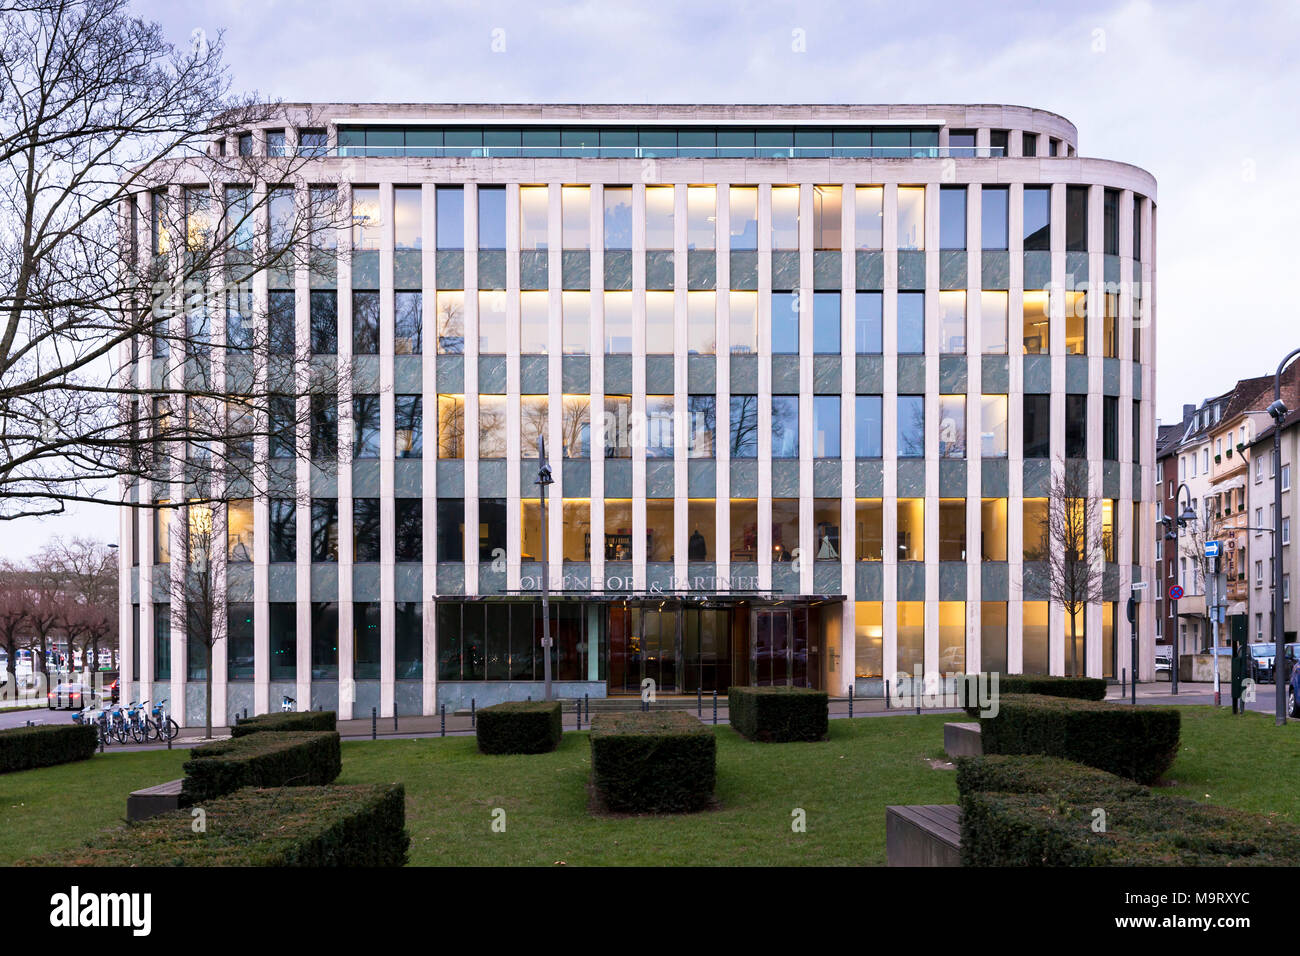 Germania, Colonia, edificio per uffici in via Konrad-Adenauer-Ufer 21-23, fra l'altro sede dello studio legale Oppenhoff & Partner. Deutschland Foto Stock